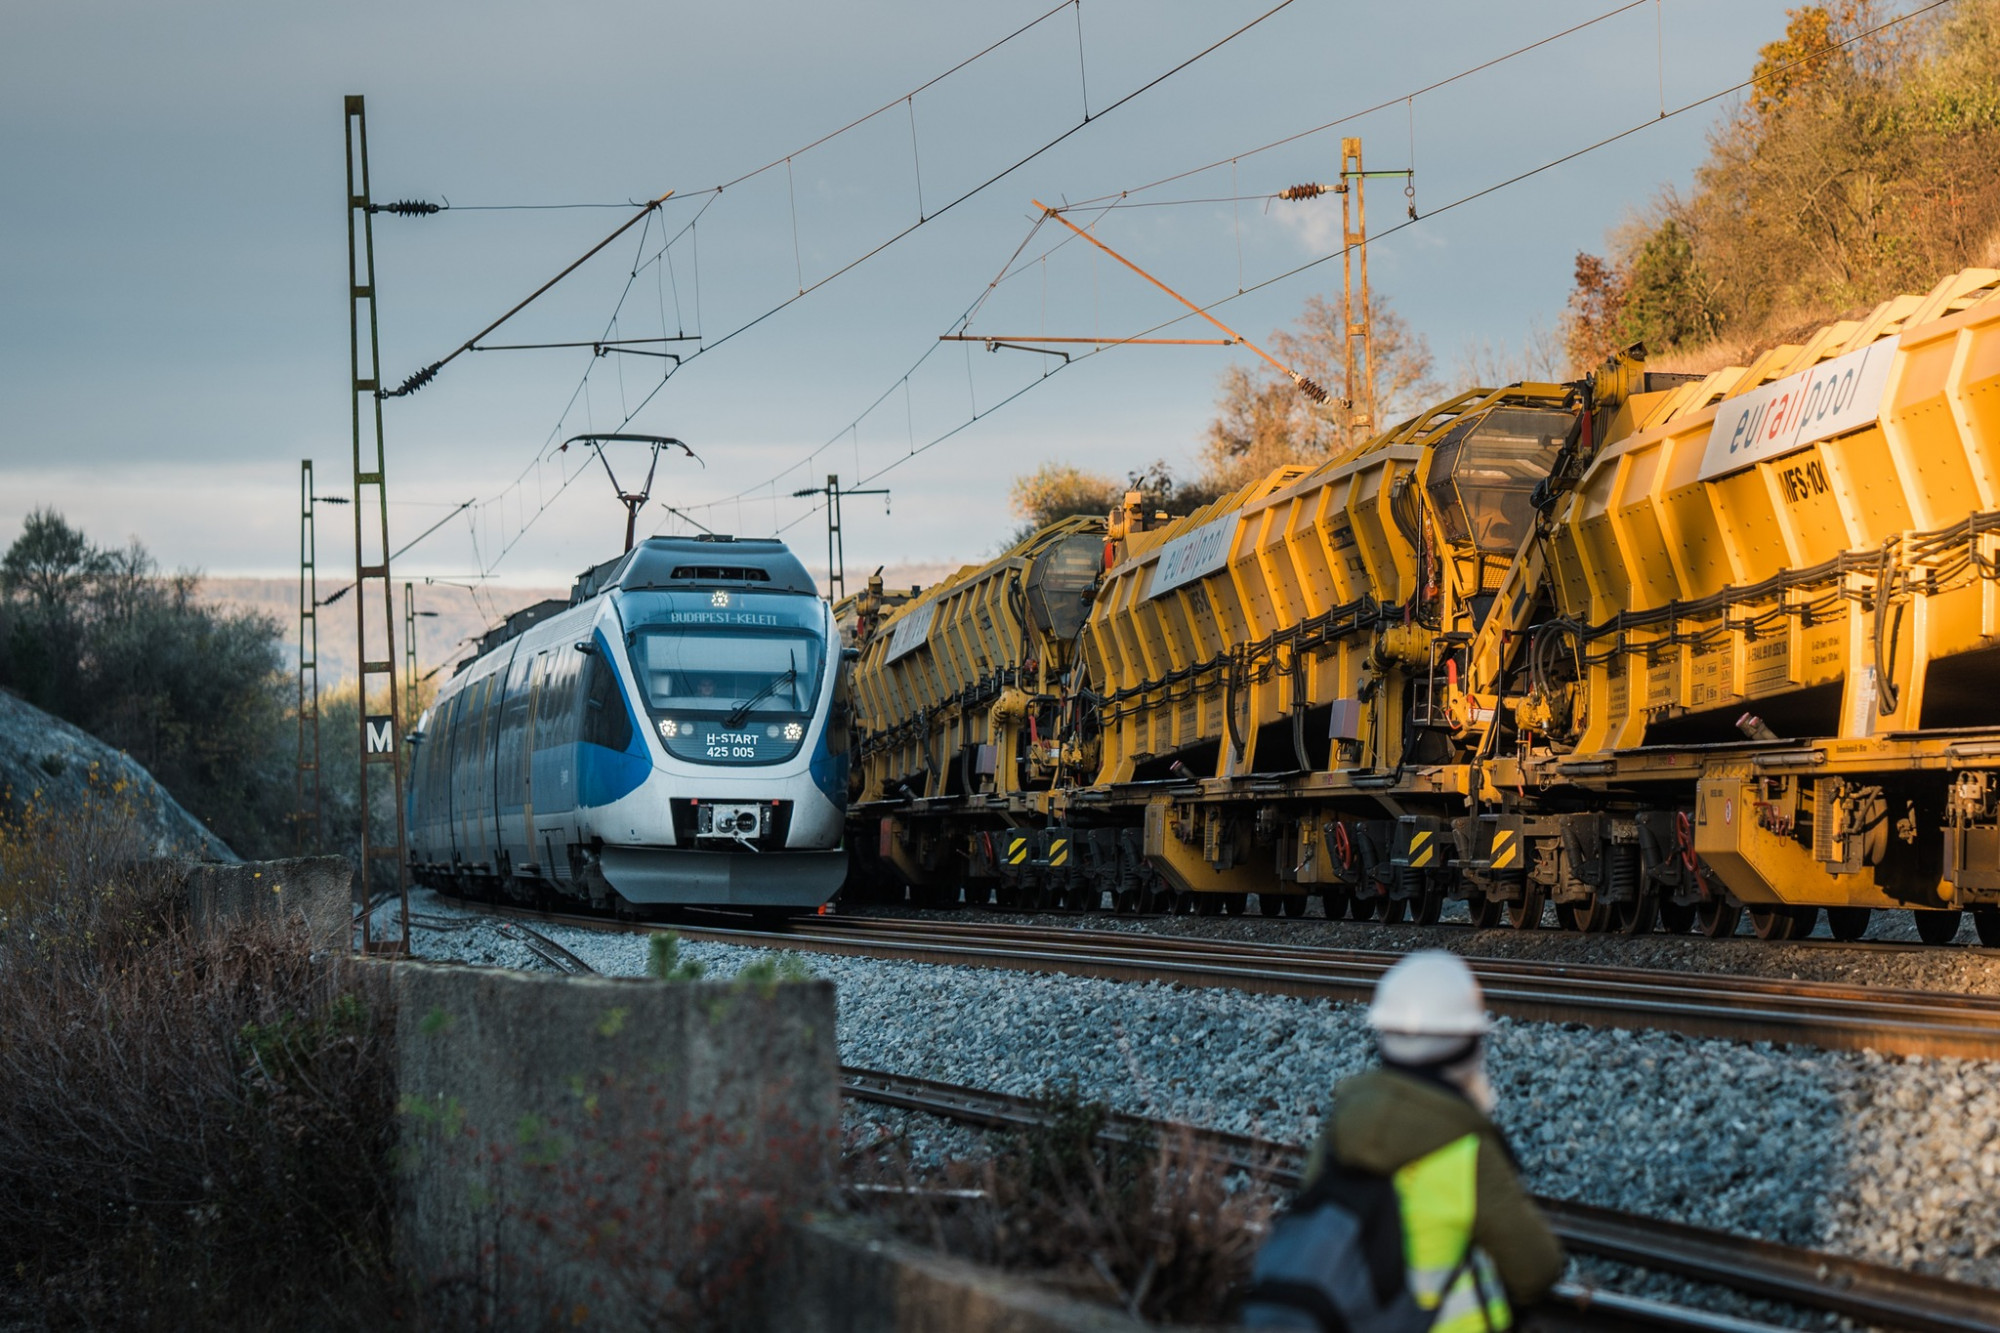 Megszabadíthatná a MÁV a győri vasútvonalon ingázókat a pótlóbuszoktól, ha akarná